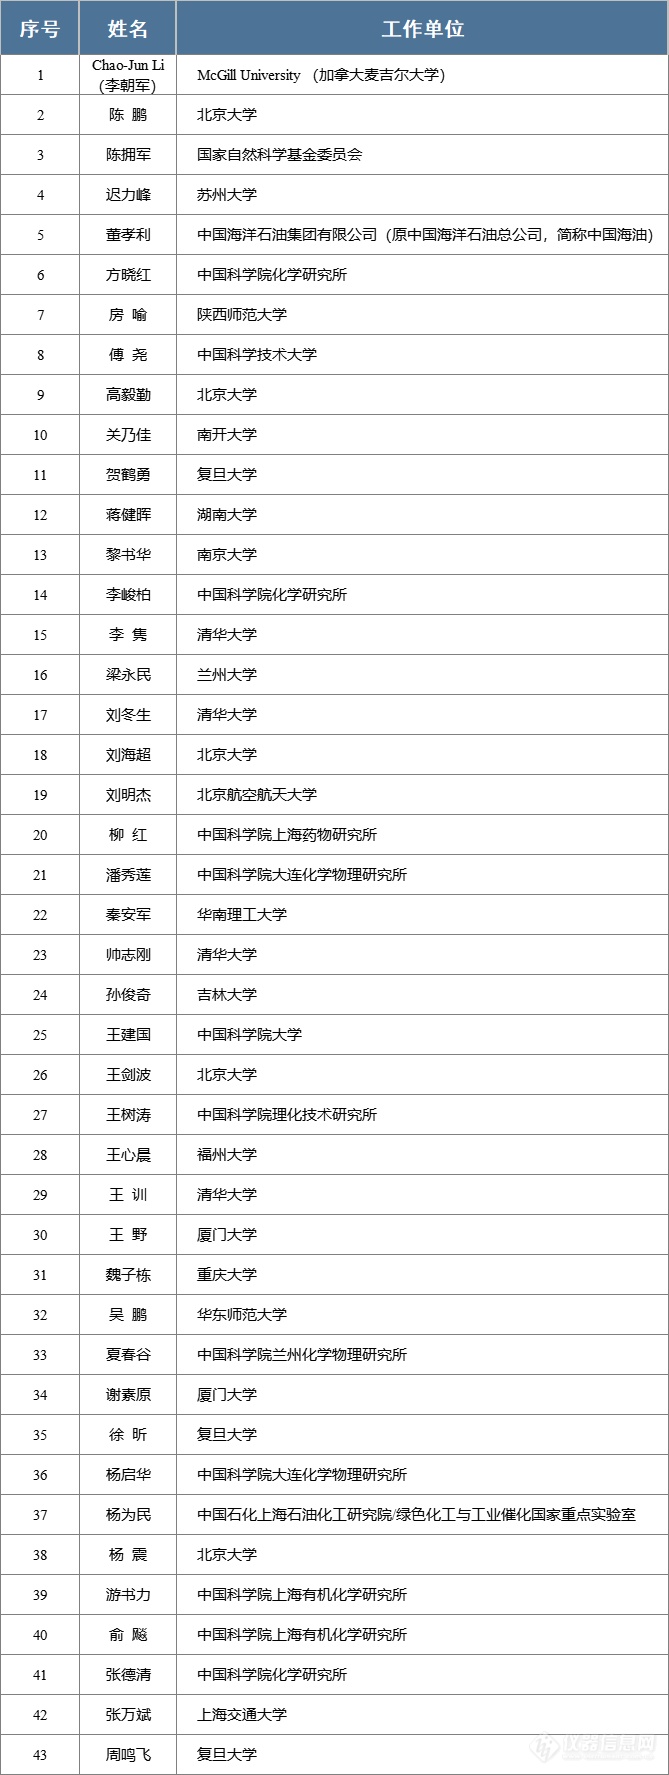 中国化学会正式公布首届会士名单 再增43位会士